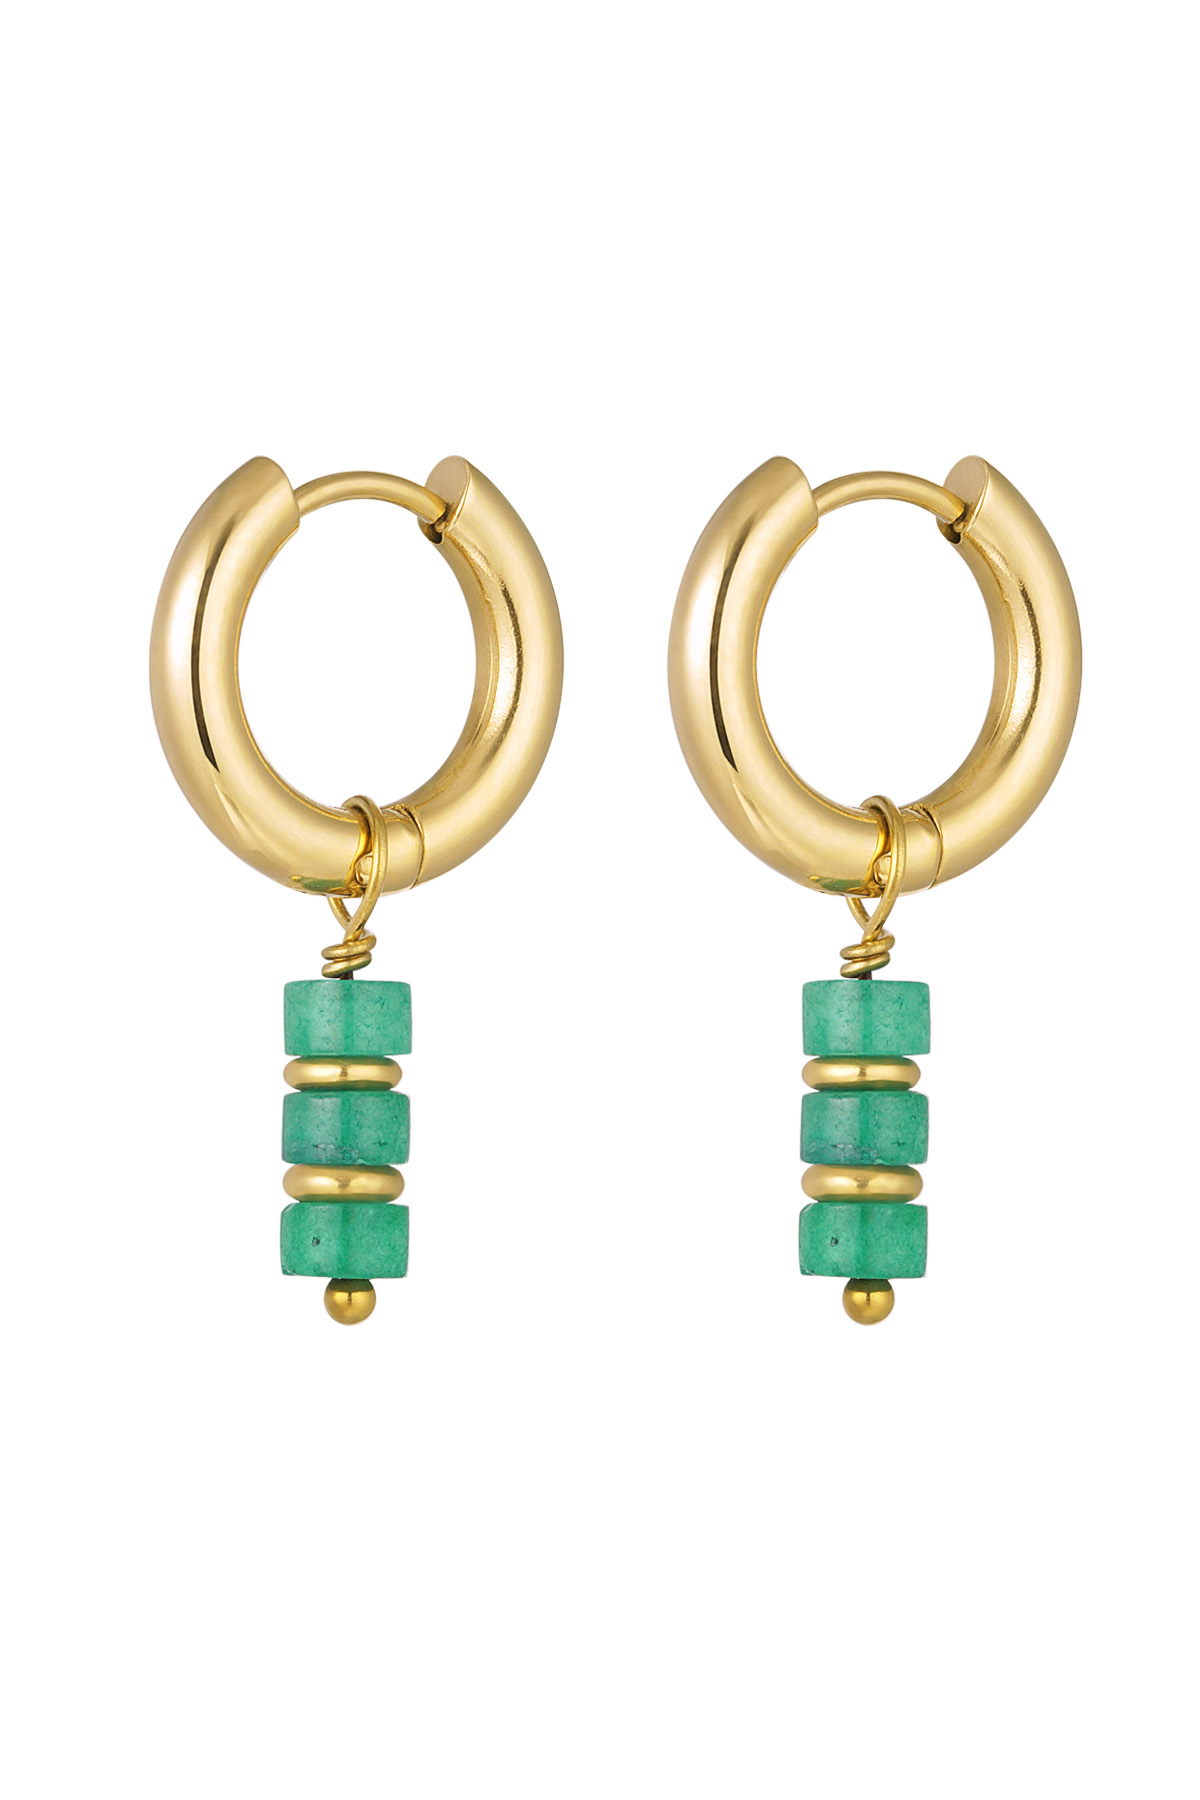 Boucles d'oreilles colorées - Collection #summergirls Acier inoxydable Vert & Doré 